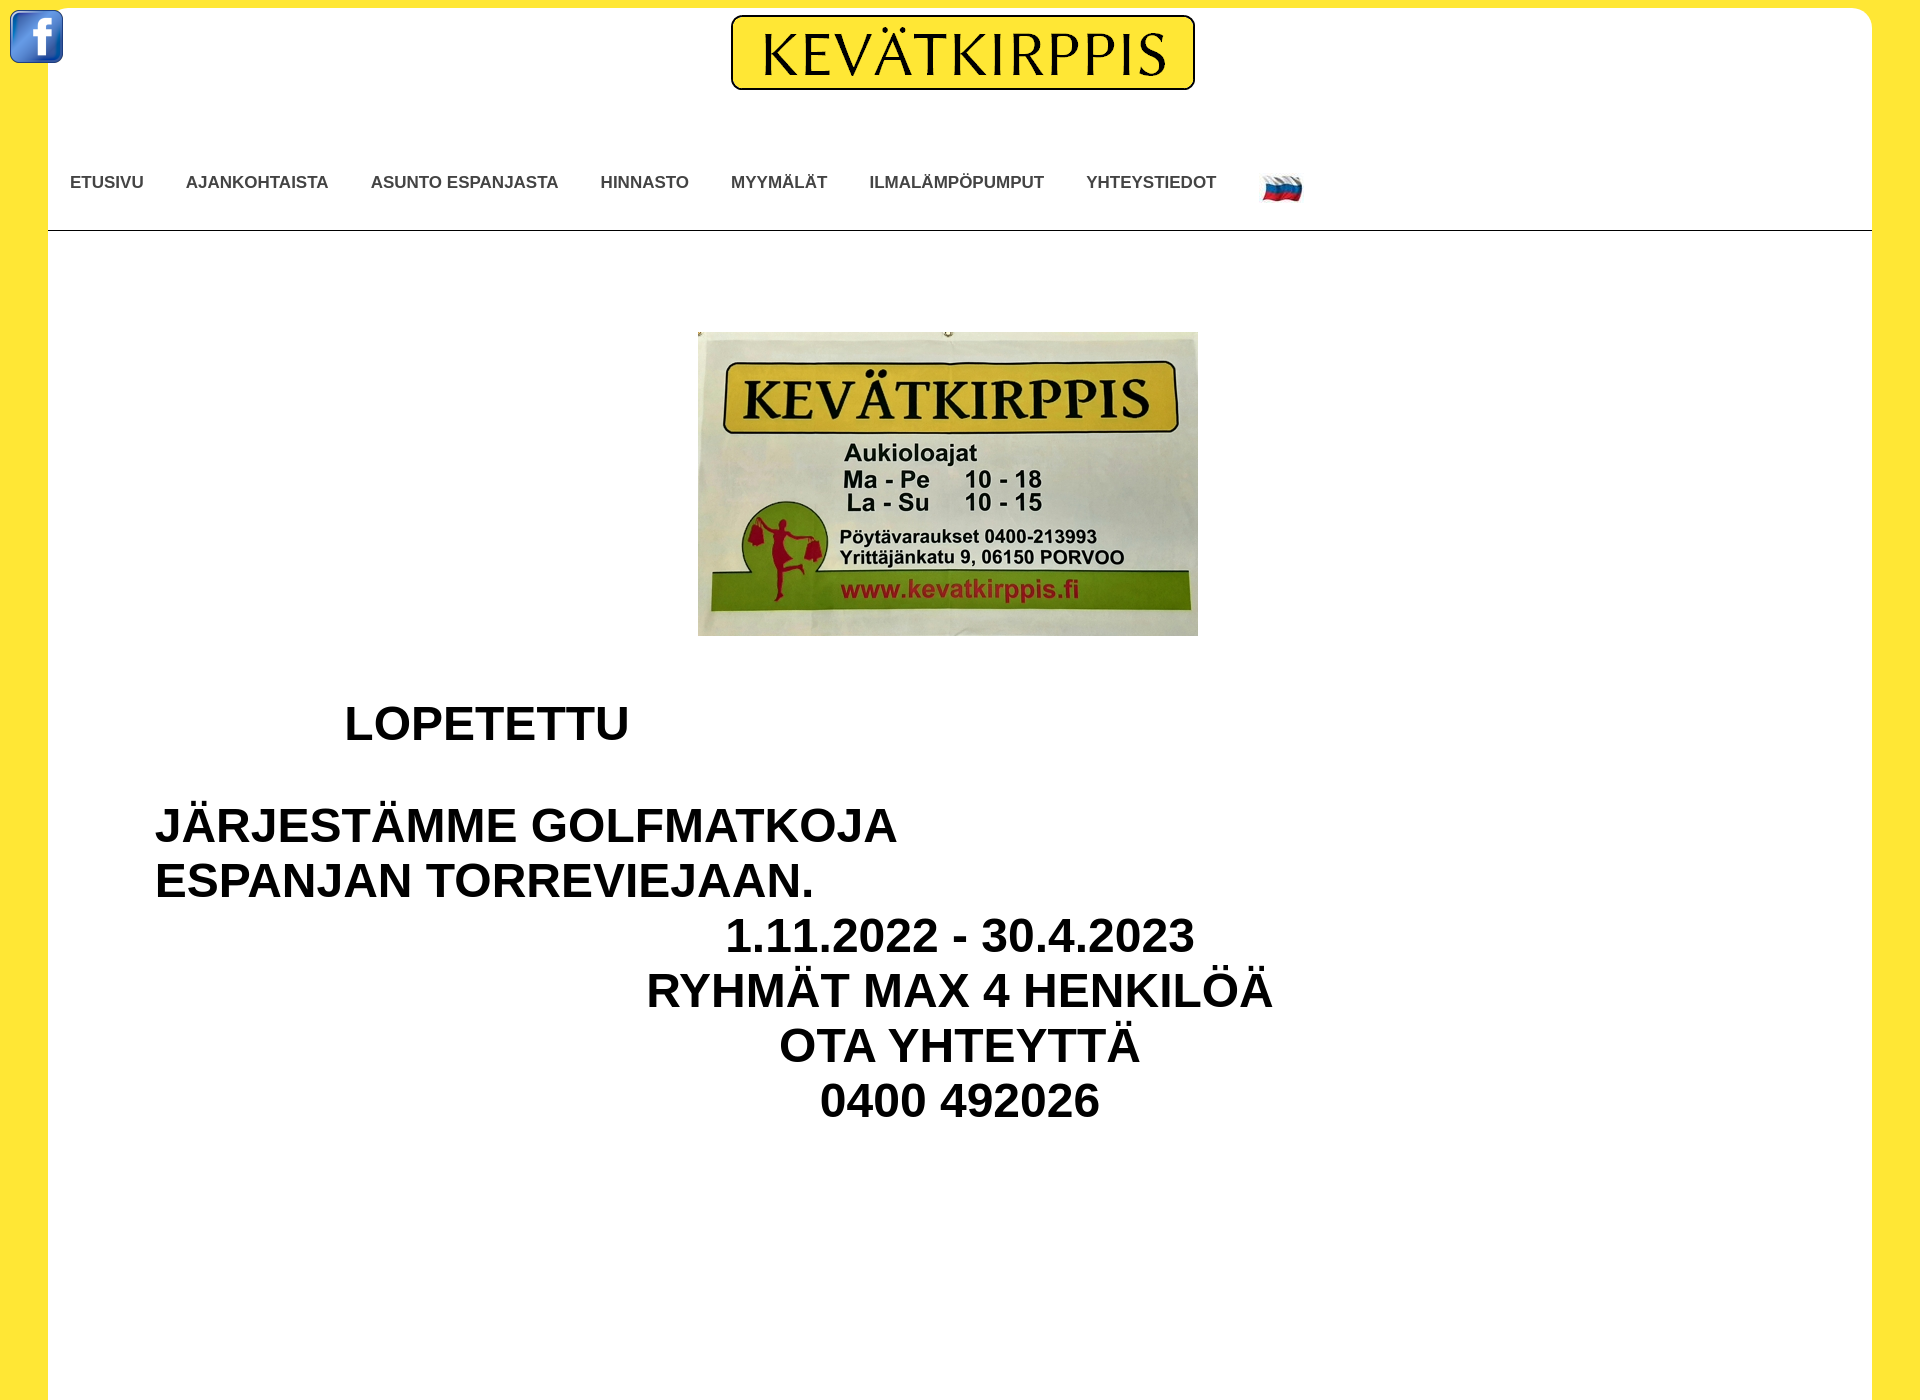 Näyttökuva kevatkirppis.fi